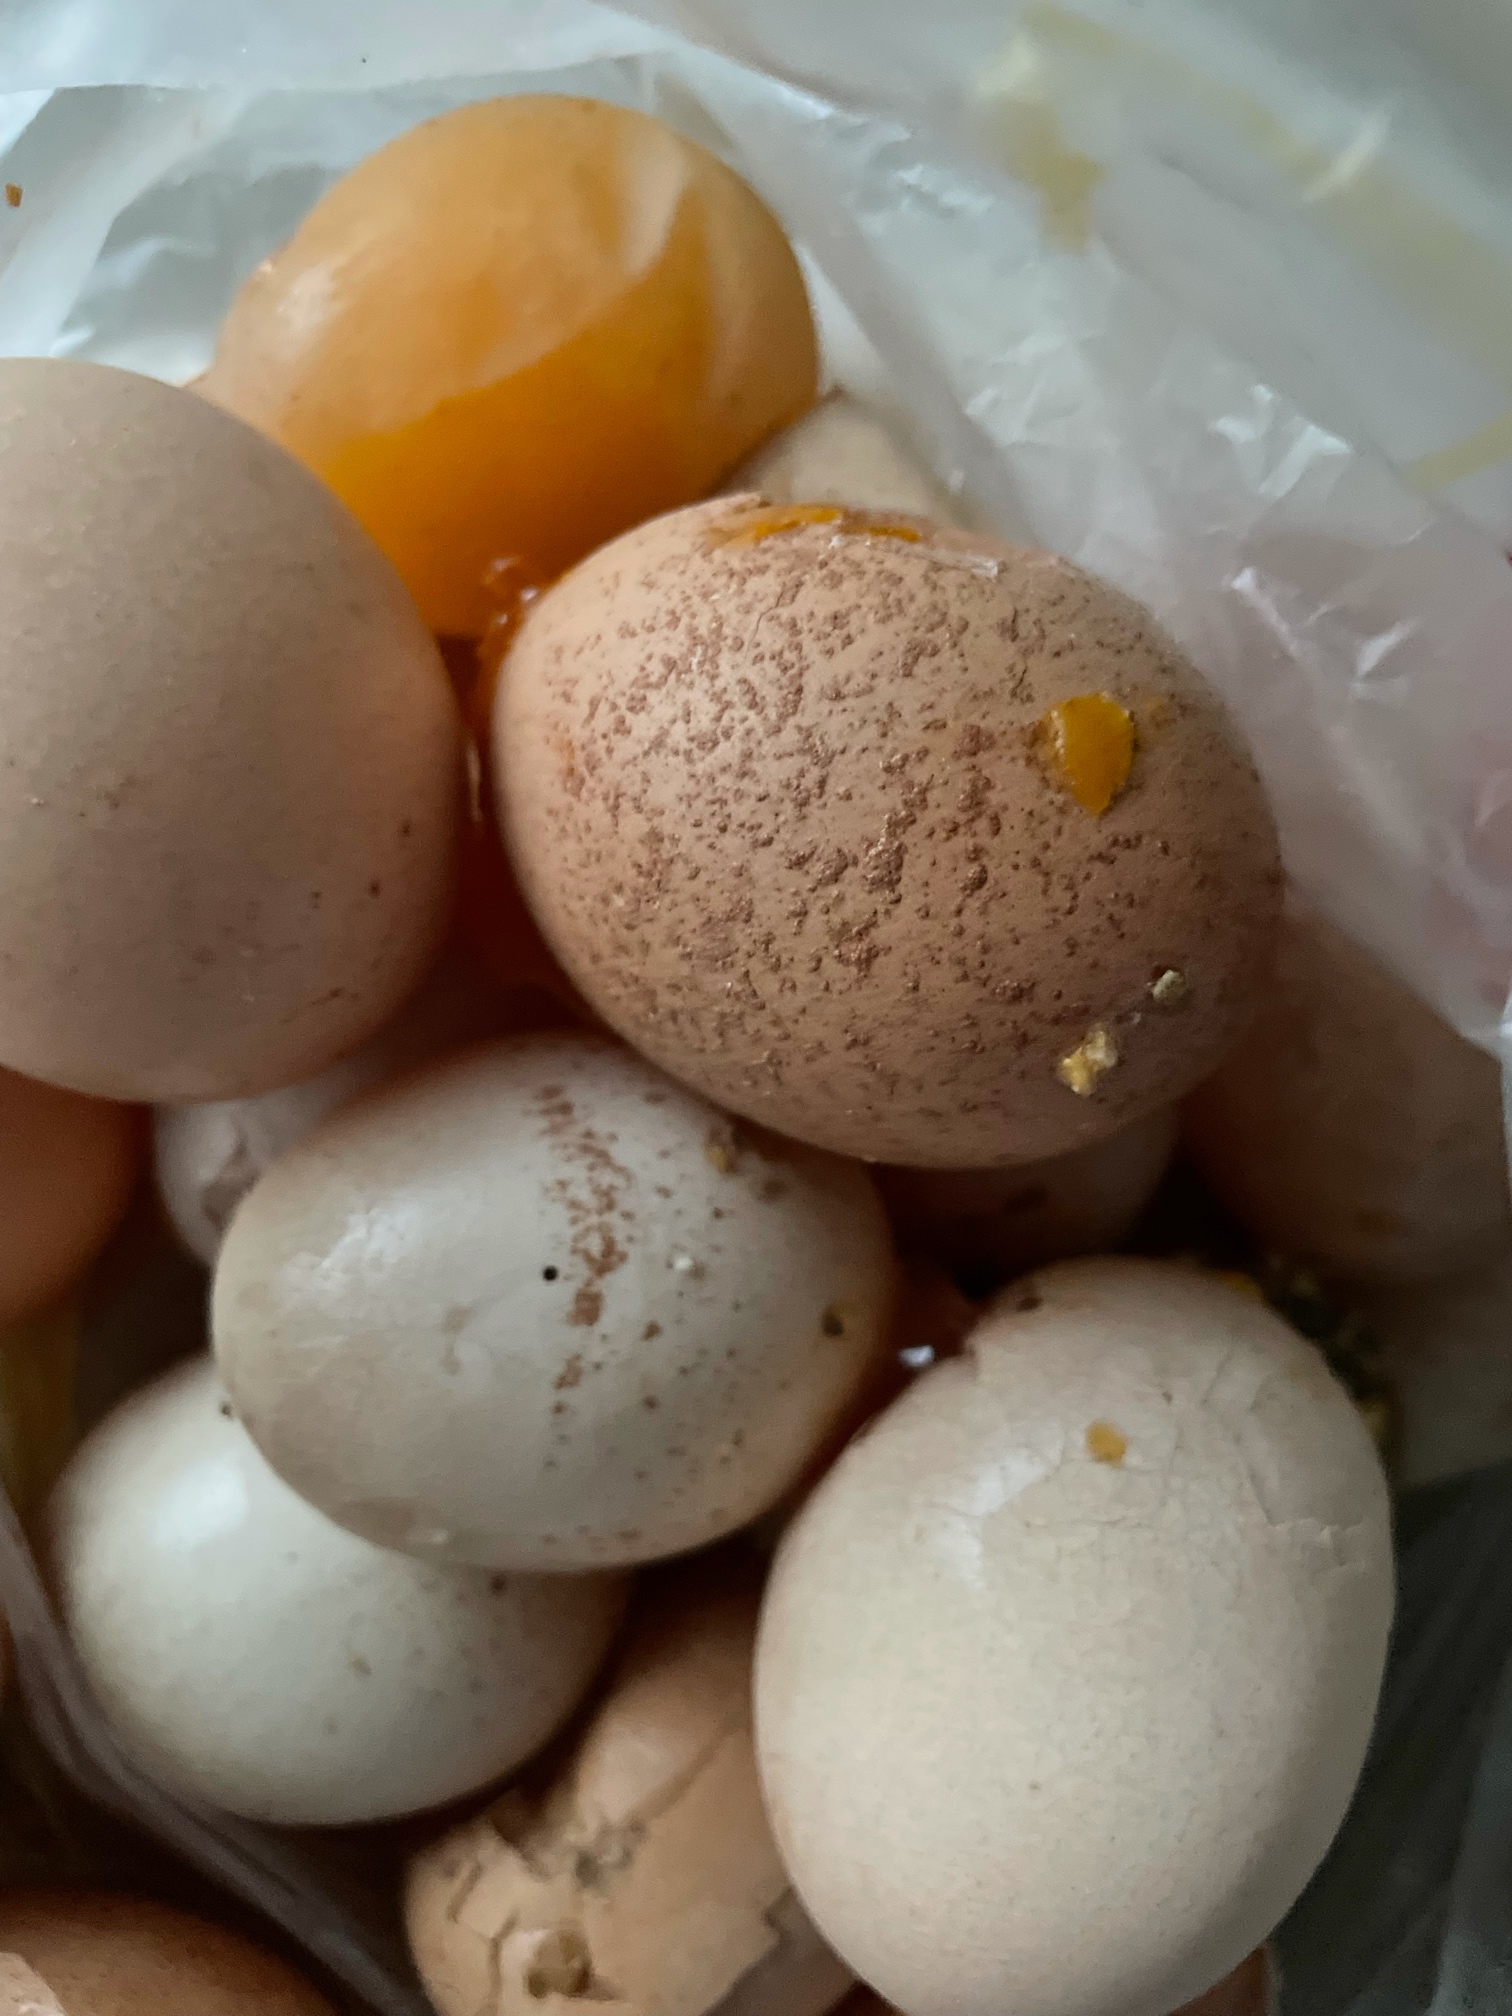 白壳蛋,沙壳蛋,软壳蛋多,并且发现蛋清如水~该用什么药? - 蛋鸡养殖(饲养管理,疾病防控) 鸡病专业网论坛